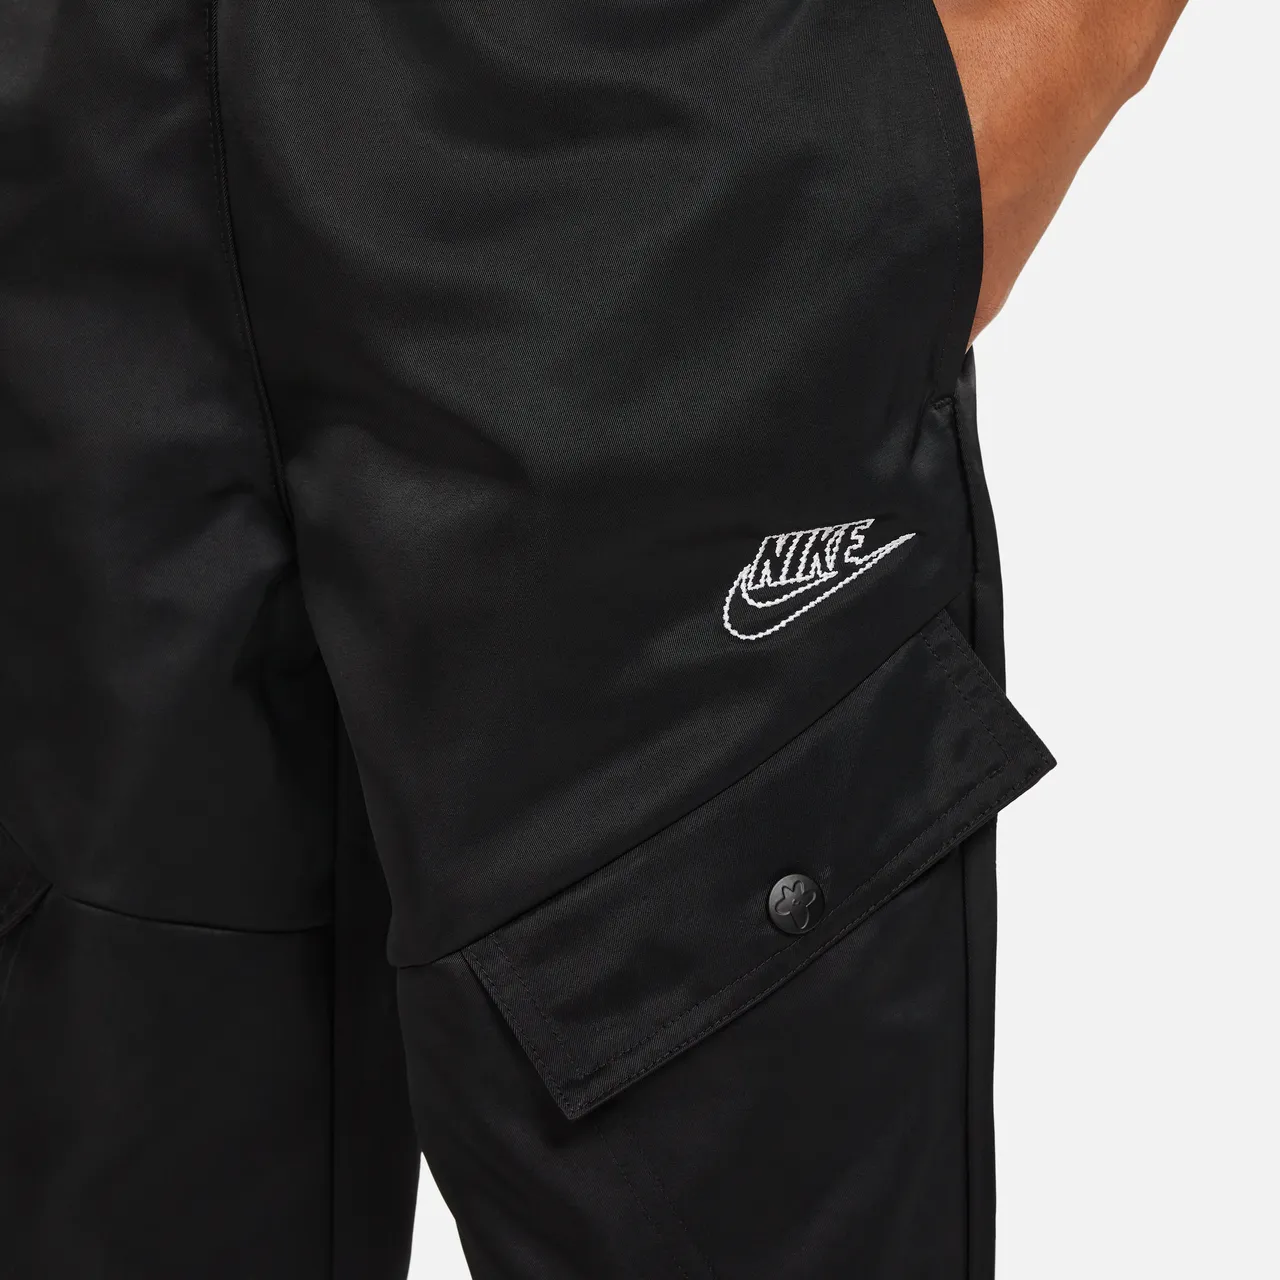 Nike Sportswear Older Kids' (Girls') Trousers - Black - Polyester